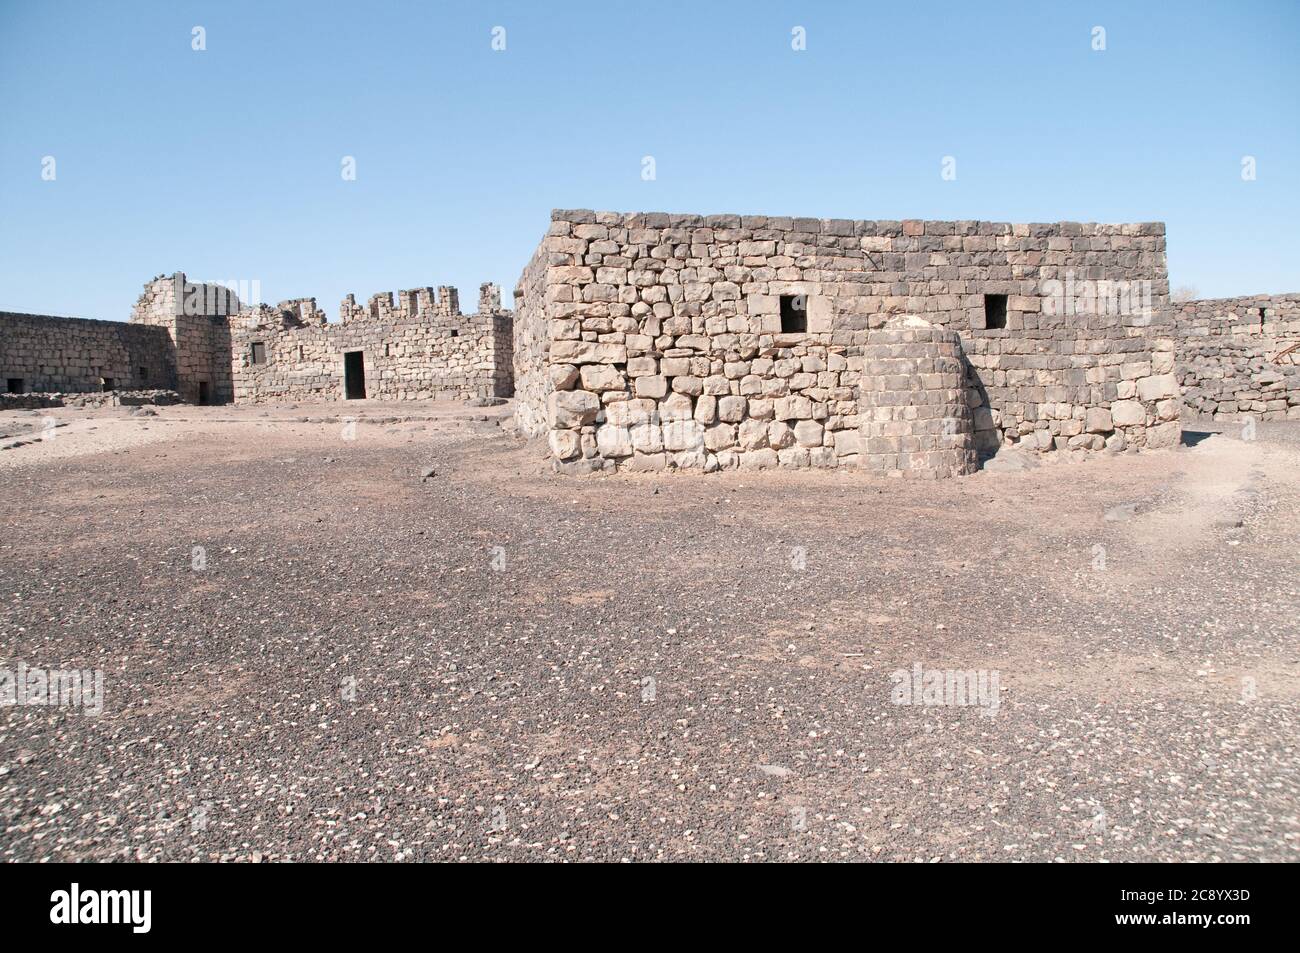 Il cortile interno del castello desertico orientale di Qasr al-Azraq vicino alla città di Azraq, nella regione Badia del regno hascemita di Giordania. Foto Stock